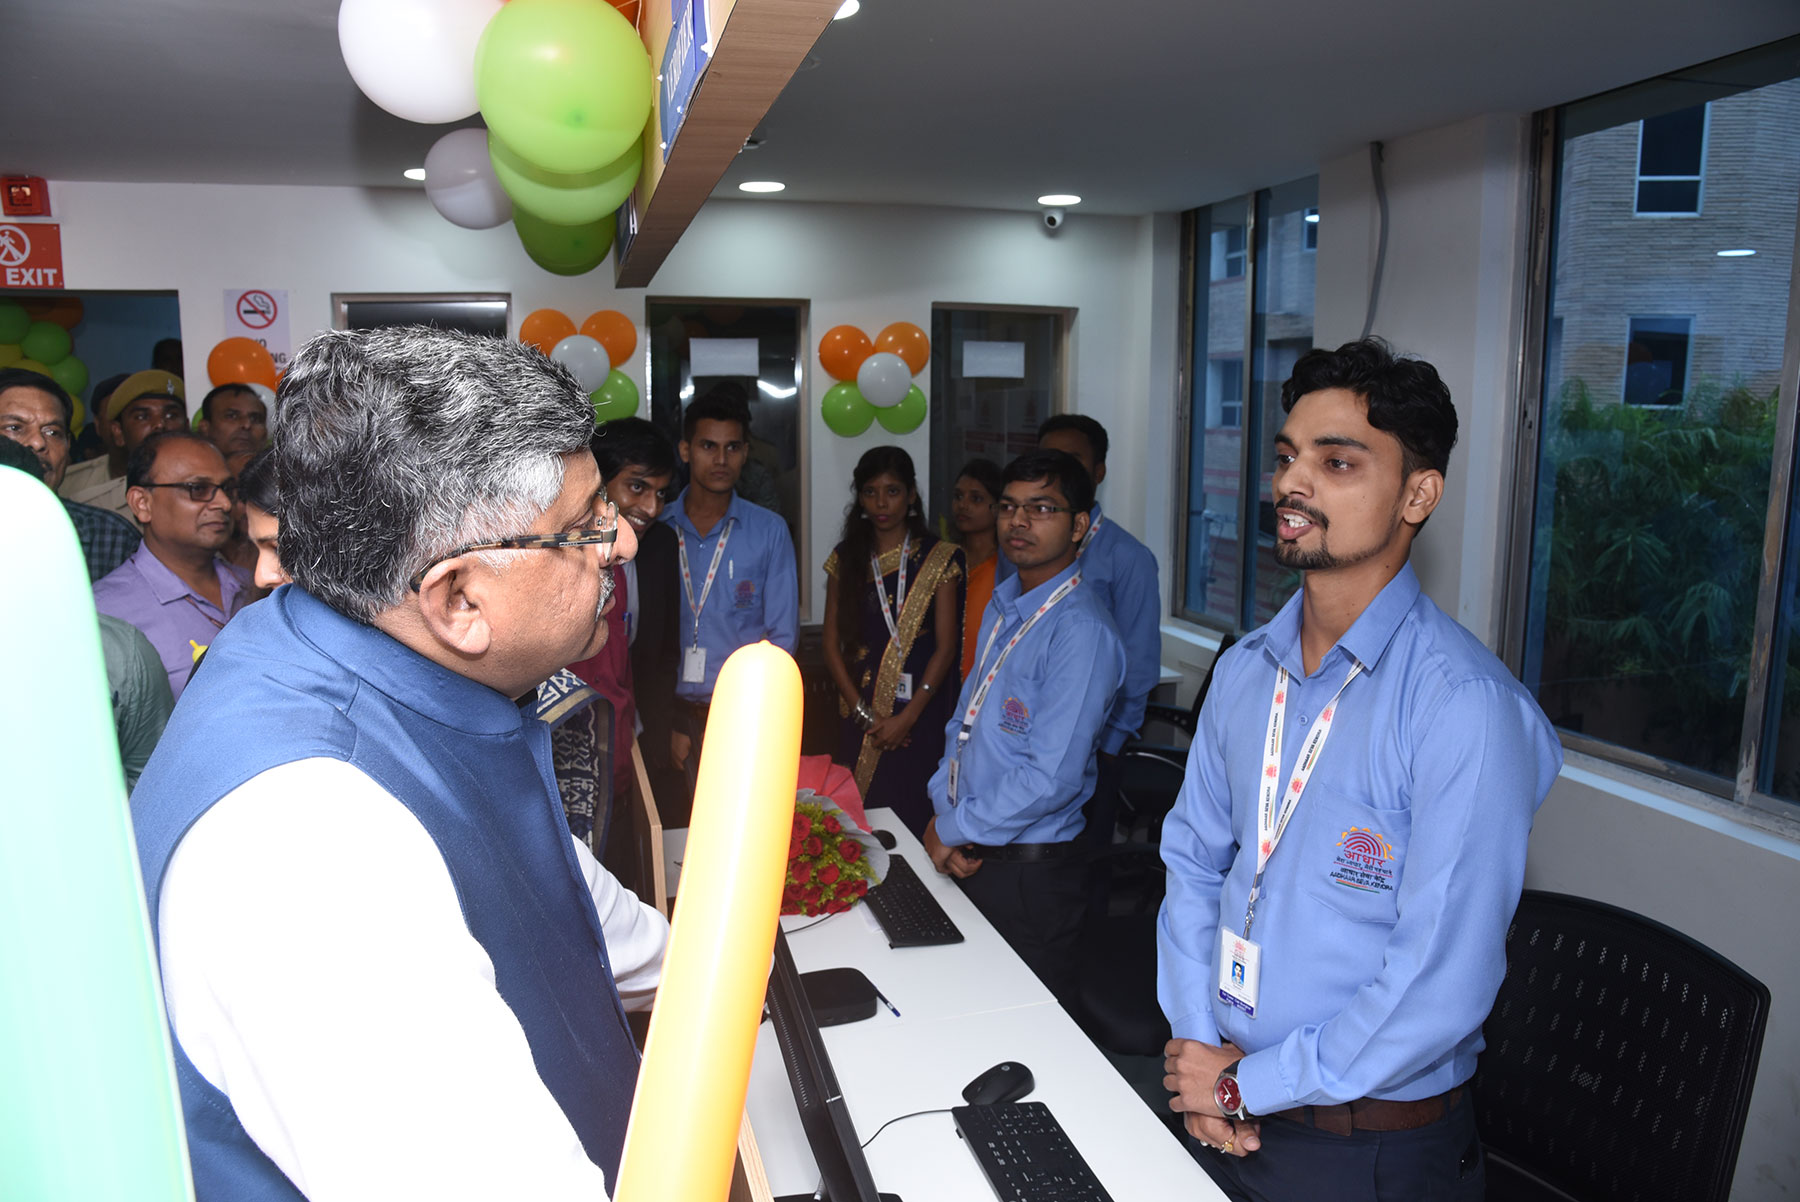 केंद्रीय इलेक्ट्रॉनिक्स एवं सूचना प्रौद्योगिकी मंत्री, श्री रवि शंकर प्रसाद आधार सेवा केंद्र पटना के कर्मचारियों से बात करते हुए